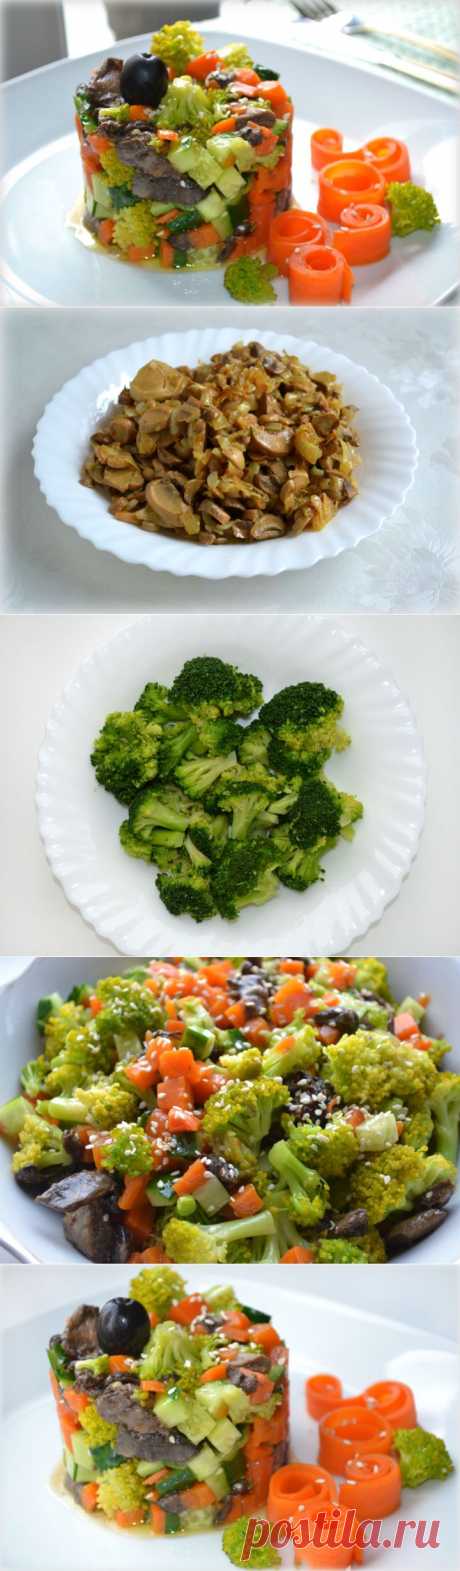 (380) Салат овощной с грибами - пошаговый рецепт с фото - салат овощной с грибами - как готовить: ингредиенты, состав, время приготовления - Леди@Mail.Ru